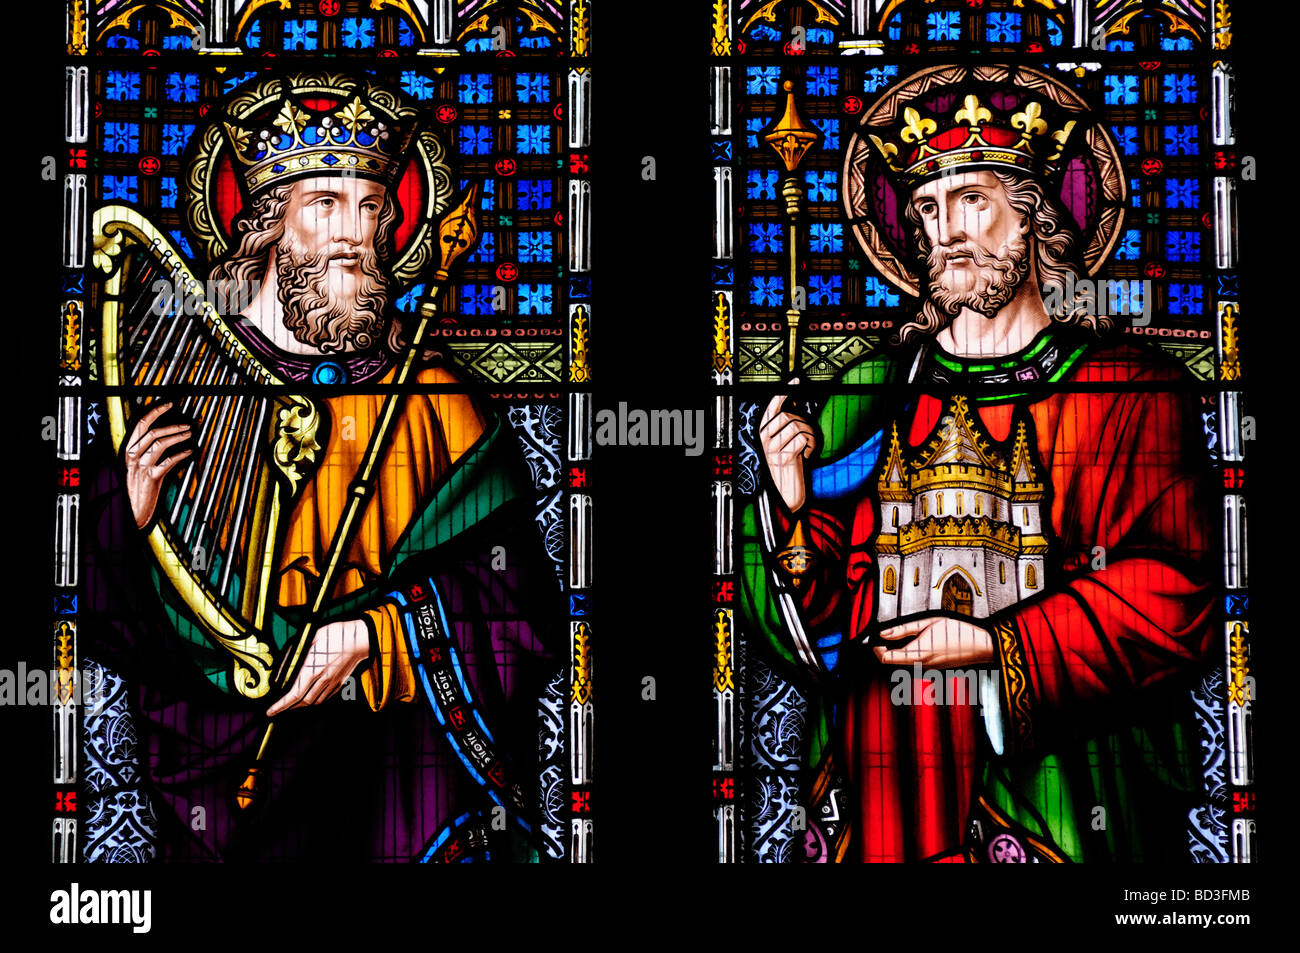 Le vitrail de la cathédrale de Peterborough avec le roi David et le roi Salomon, Cambridgeshire England UK Banque D'Images